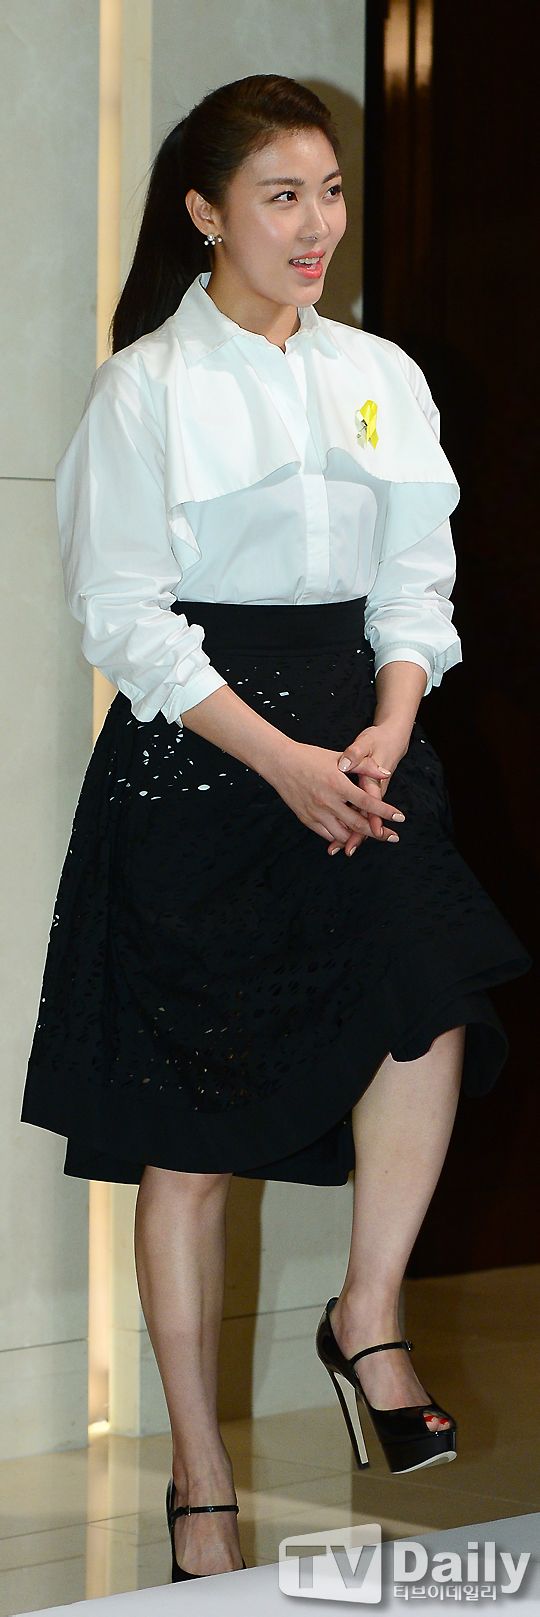 Ha Ji Won,diễn viên Hàn,sao Hàn,gương mặt,phù nề,sưng phồng,bóng bẩy.